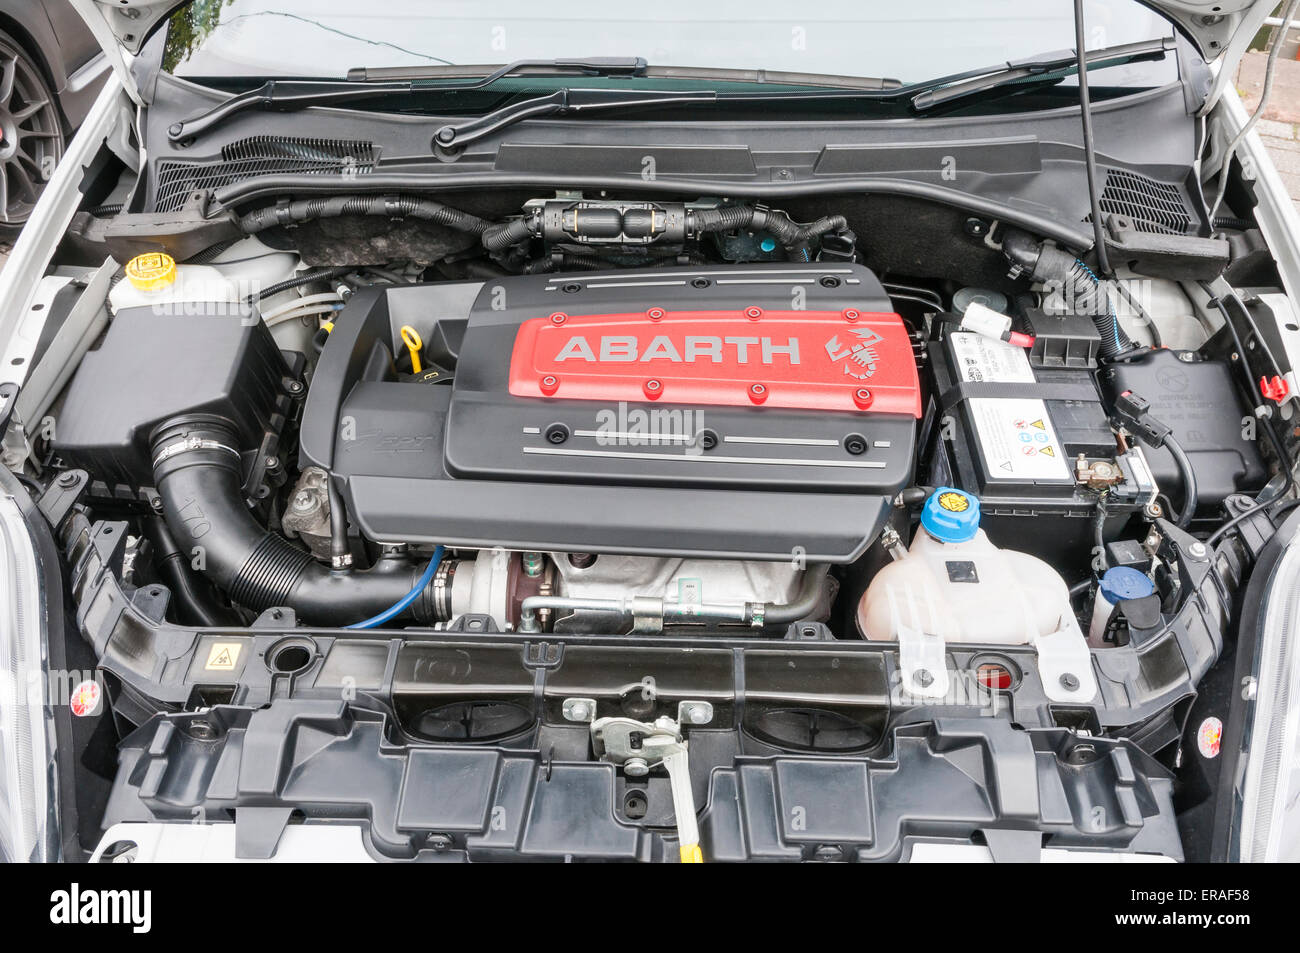 La baie moteur d'une Fiat 500 Abarth Photo Stock - Alamy